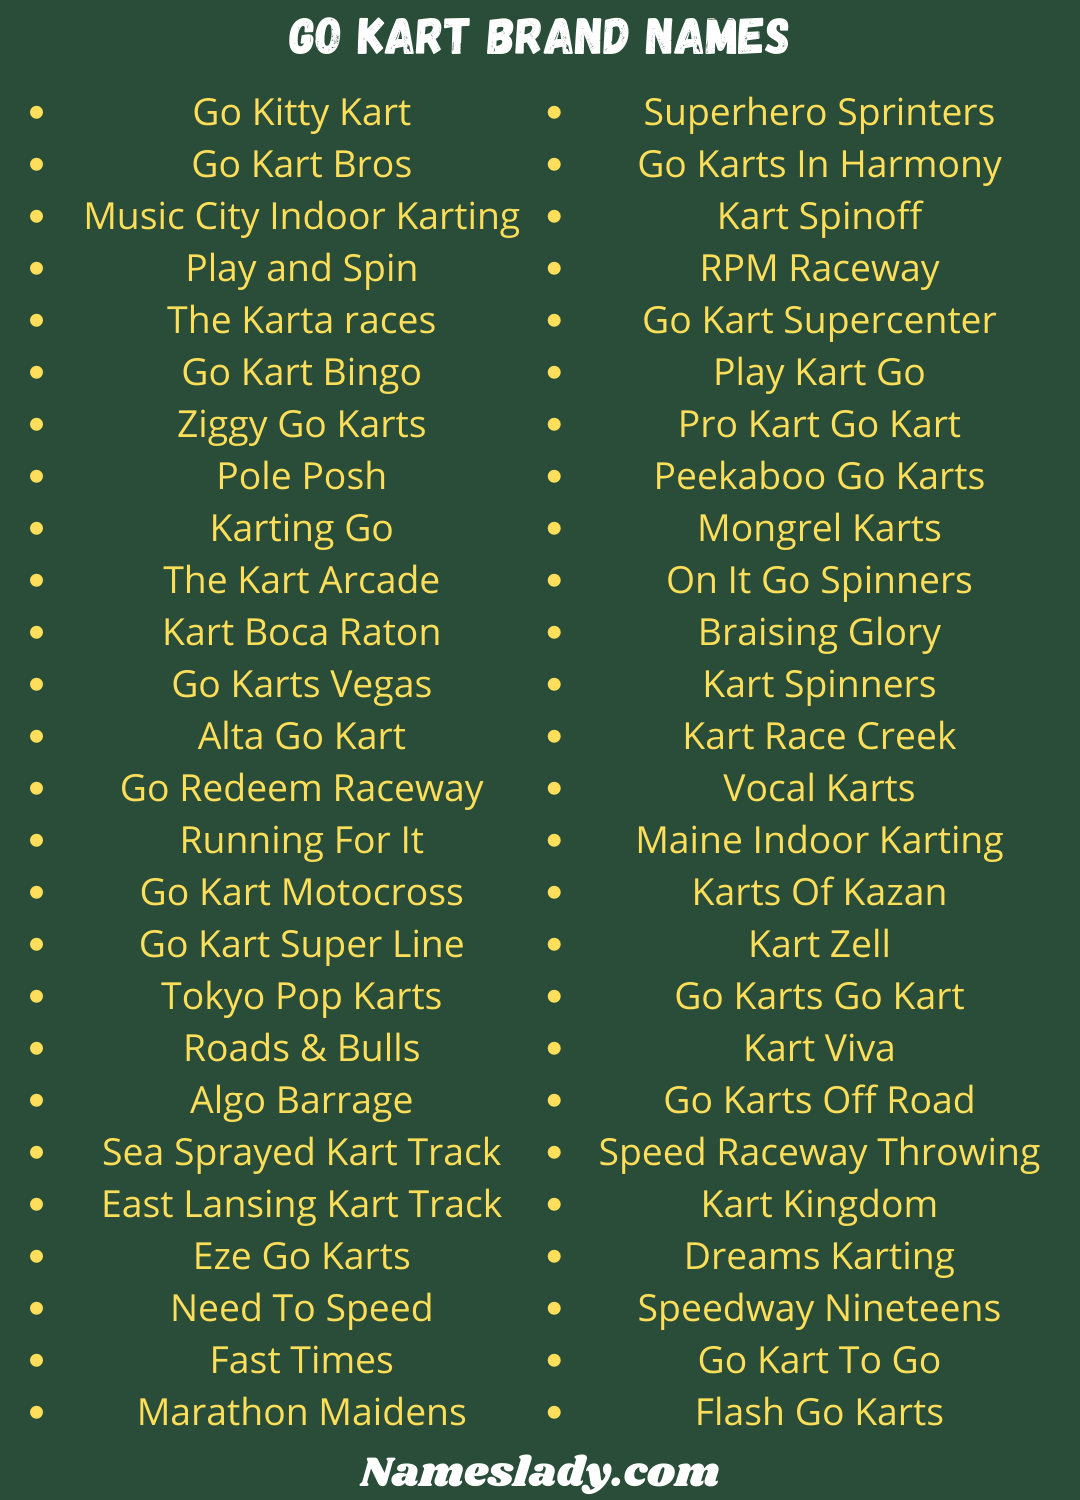 Go Kart Brand Names